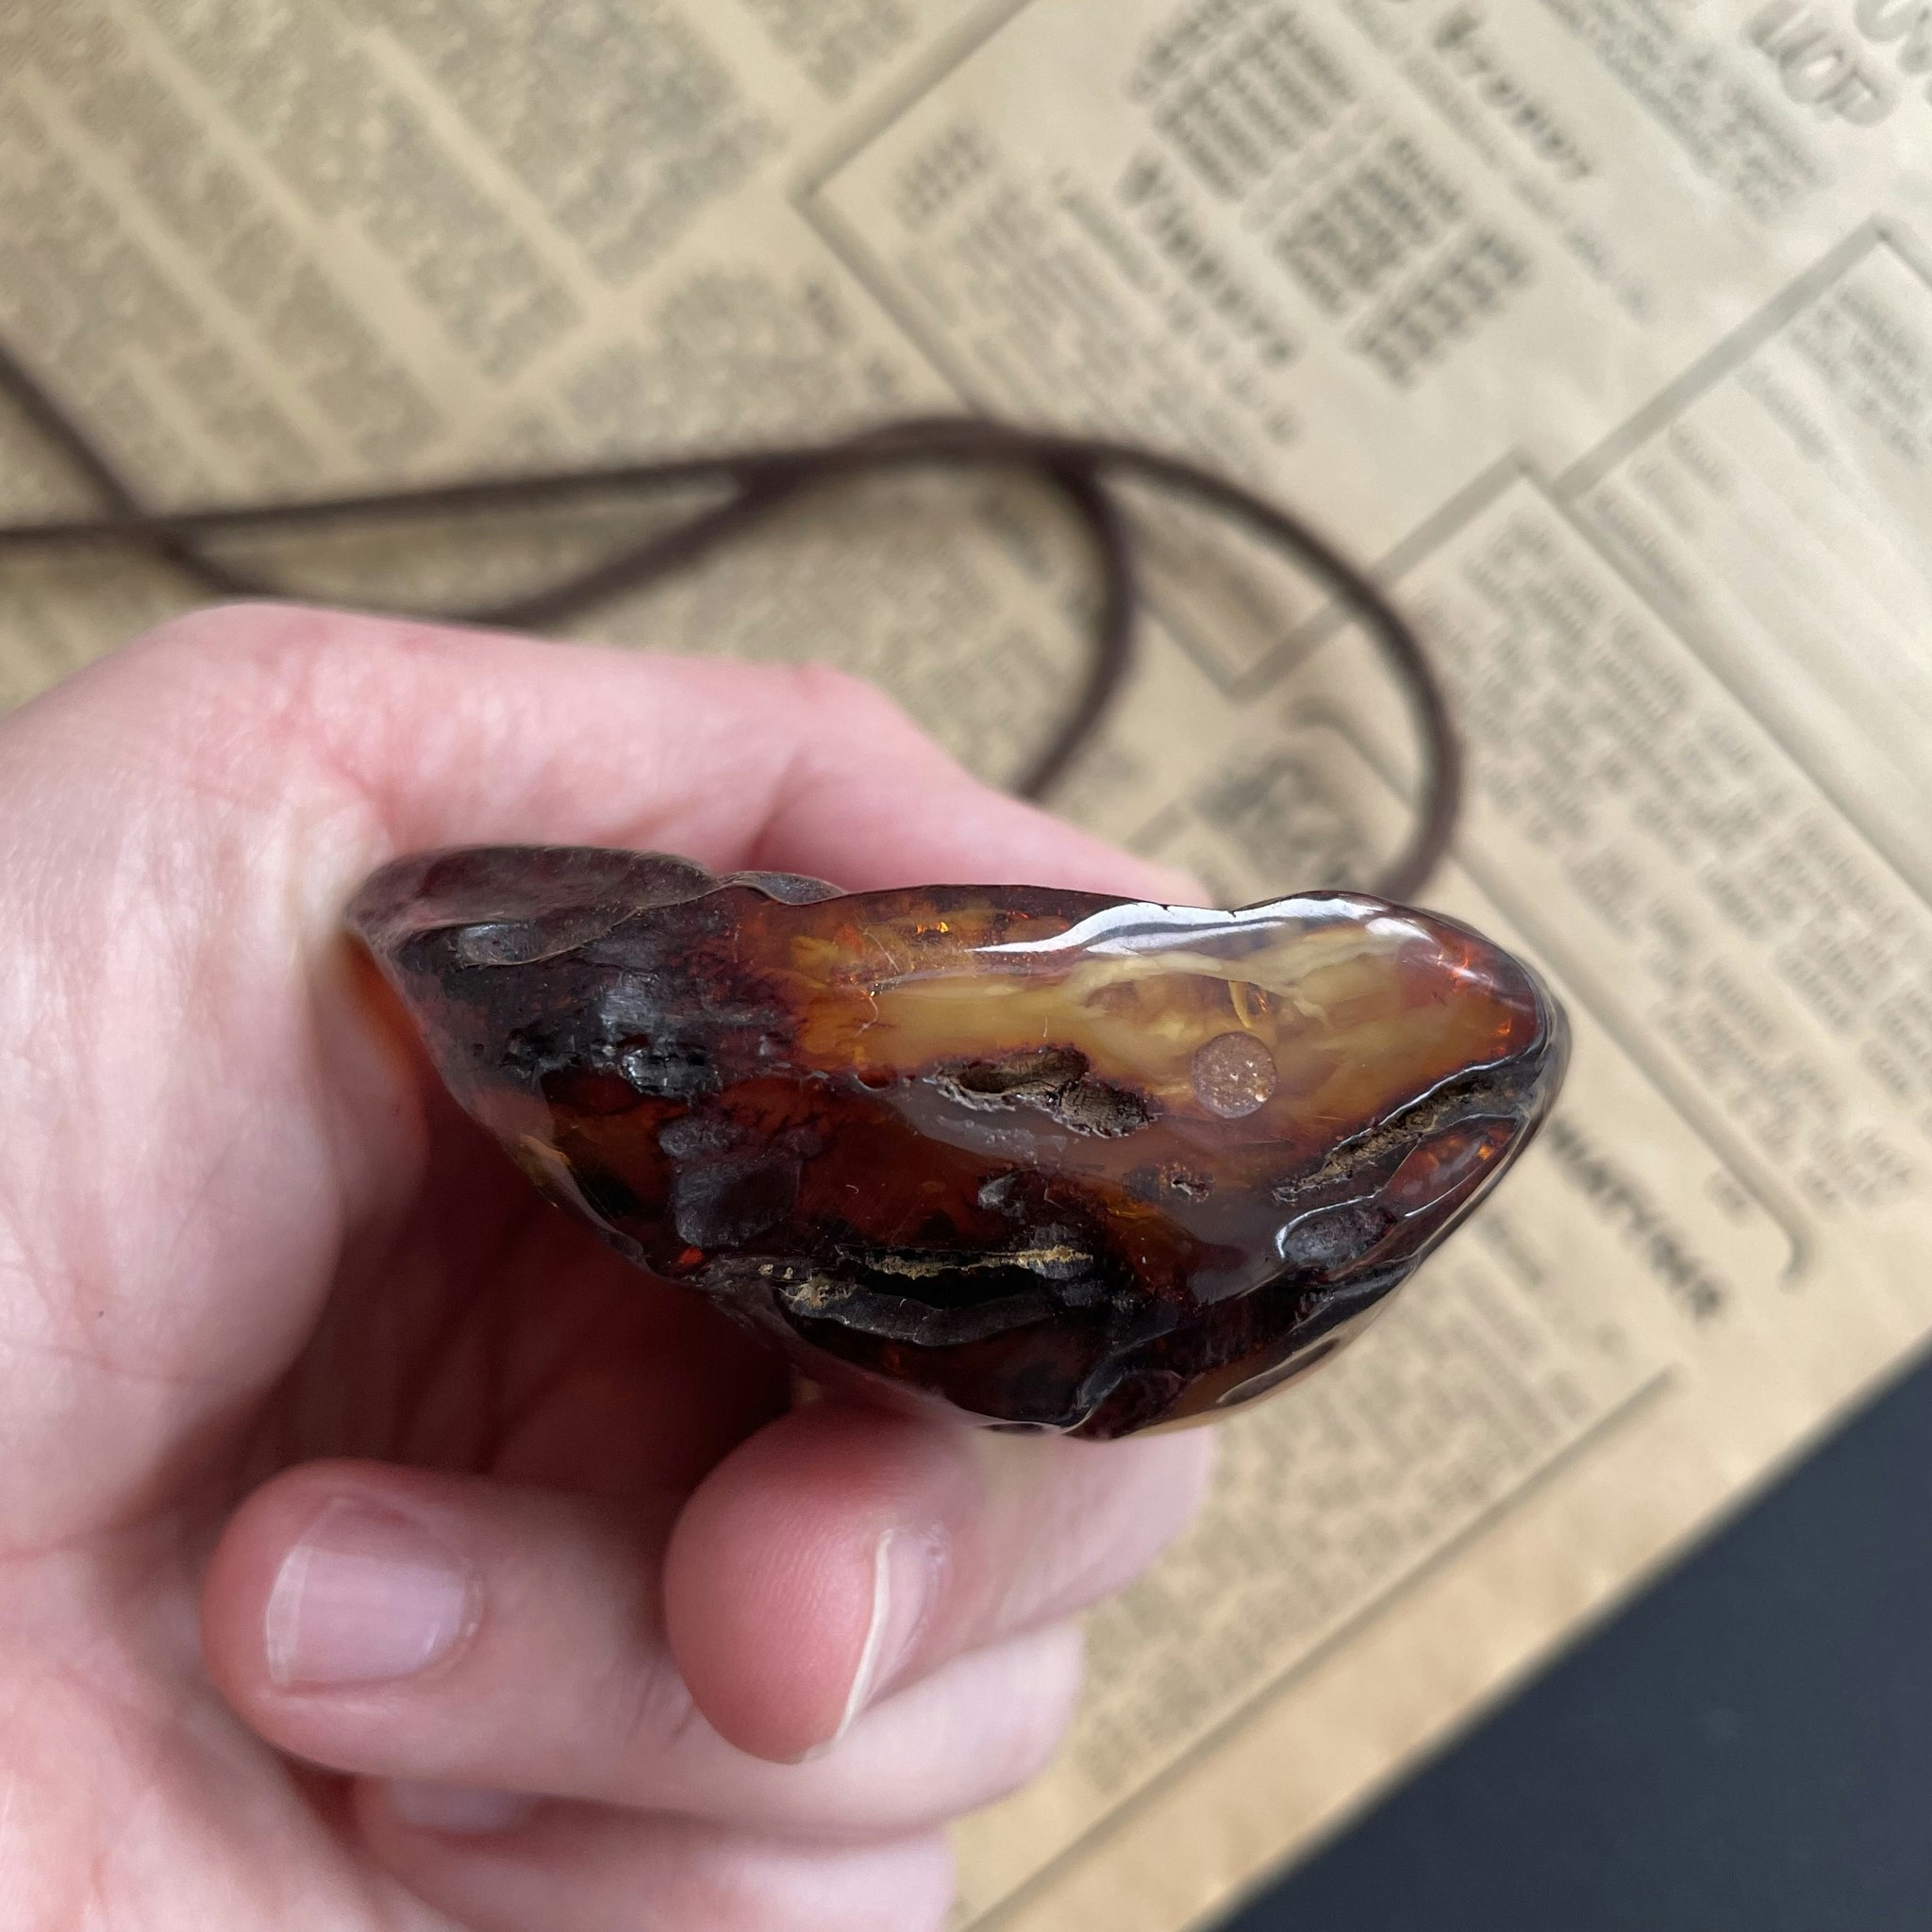 00% Natural Danish Amber Pendant Big Baltic amber 81 grams #1756